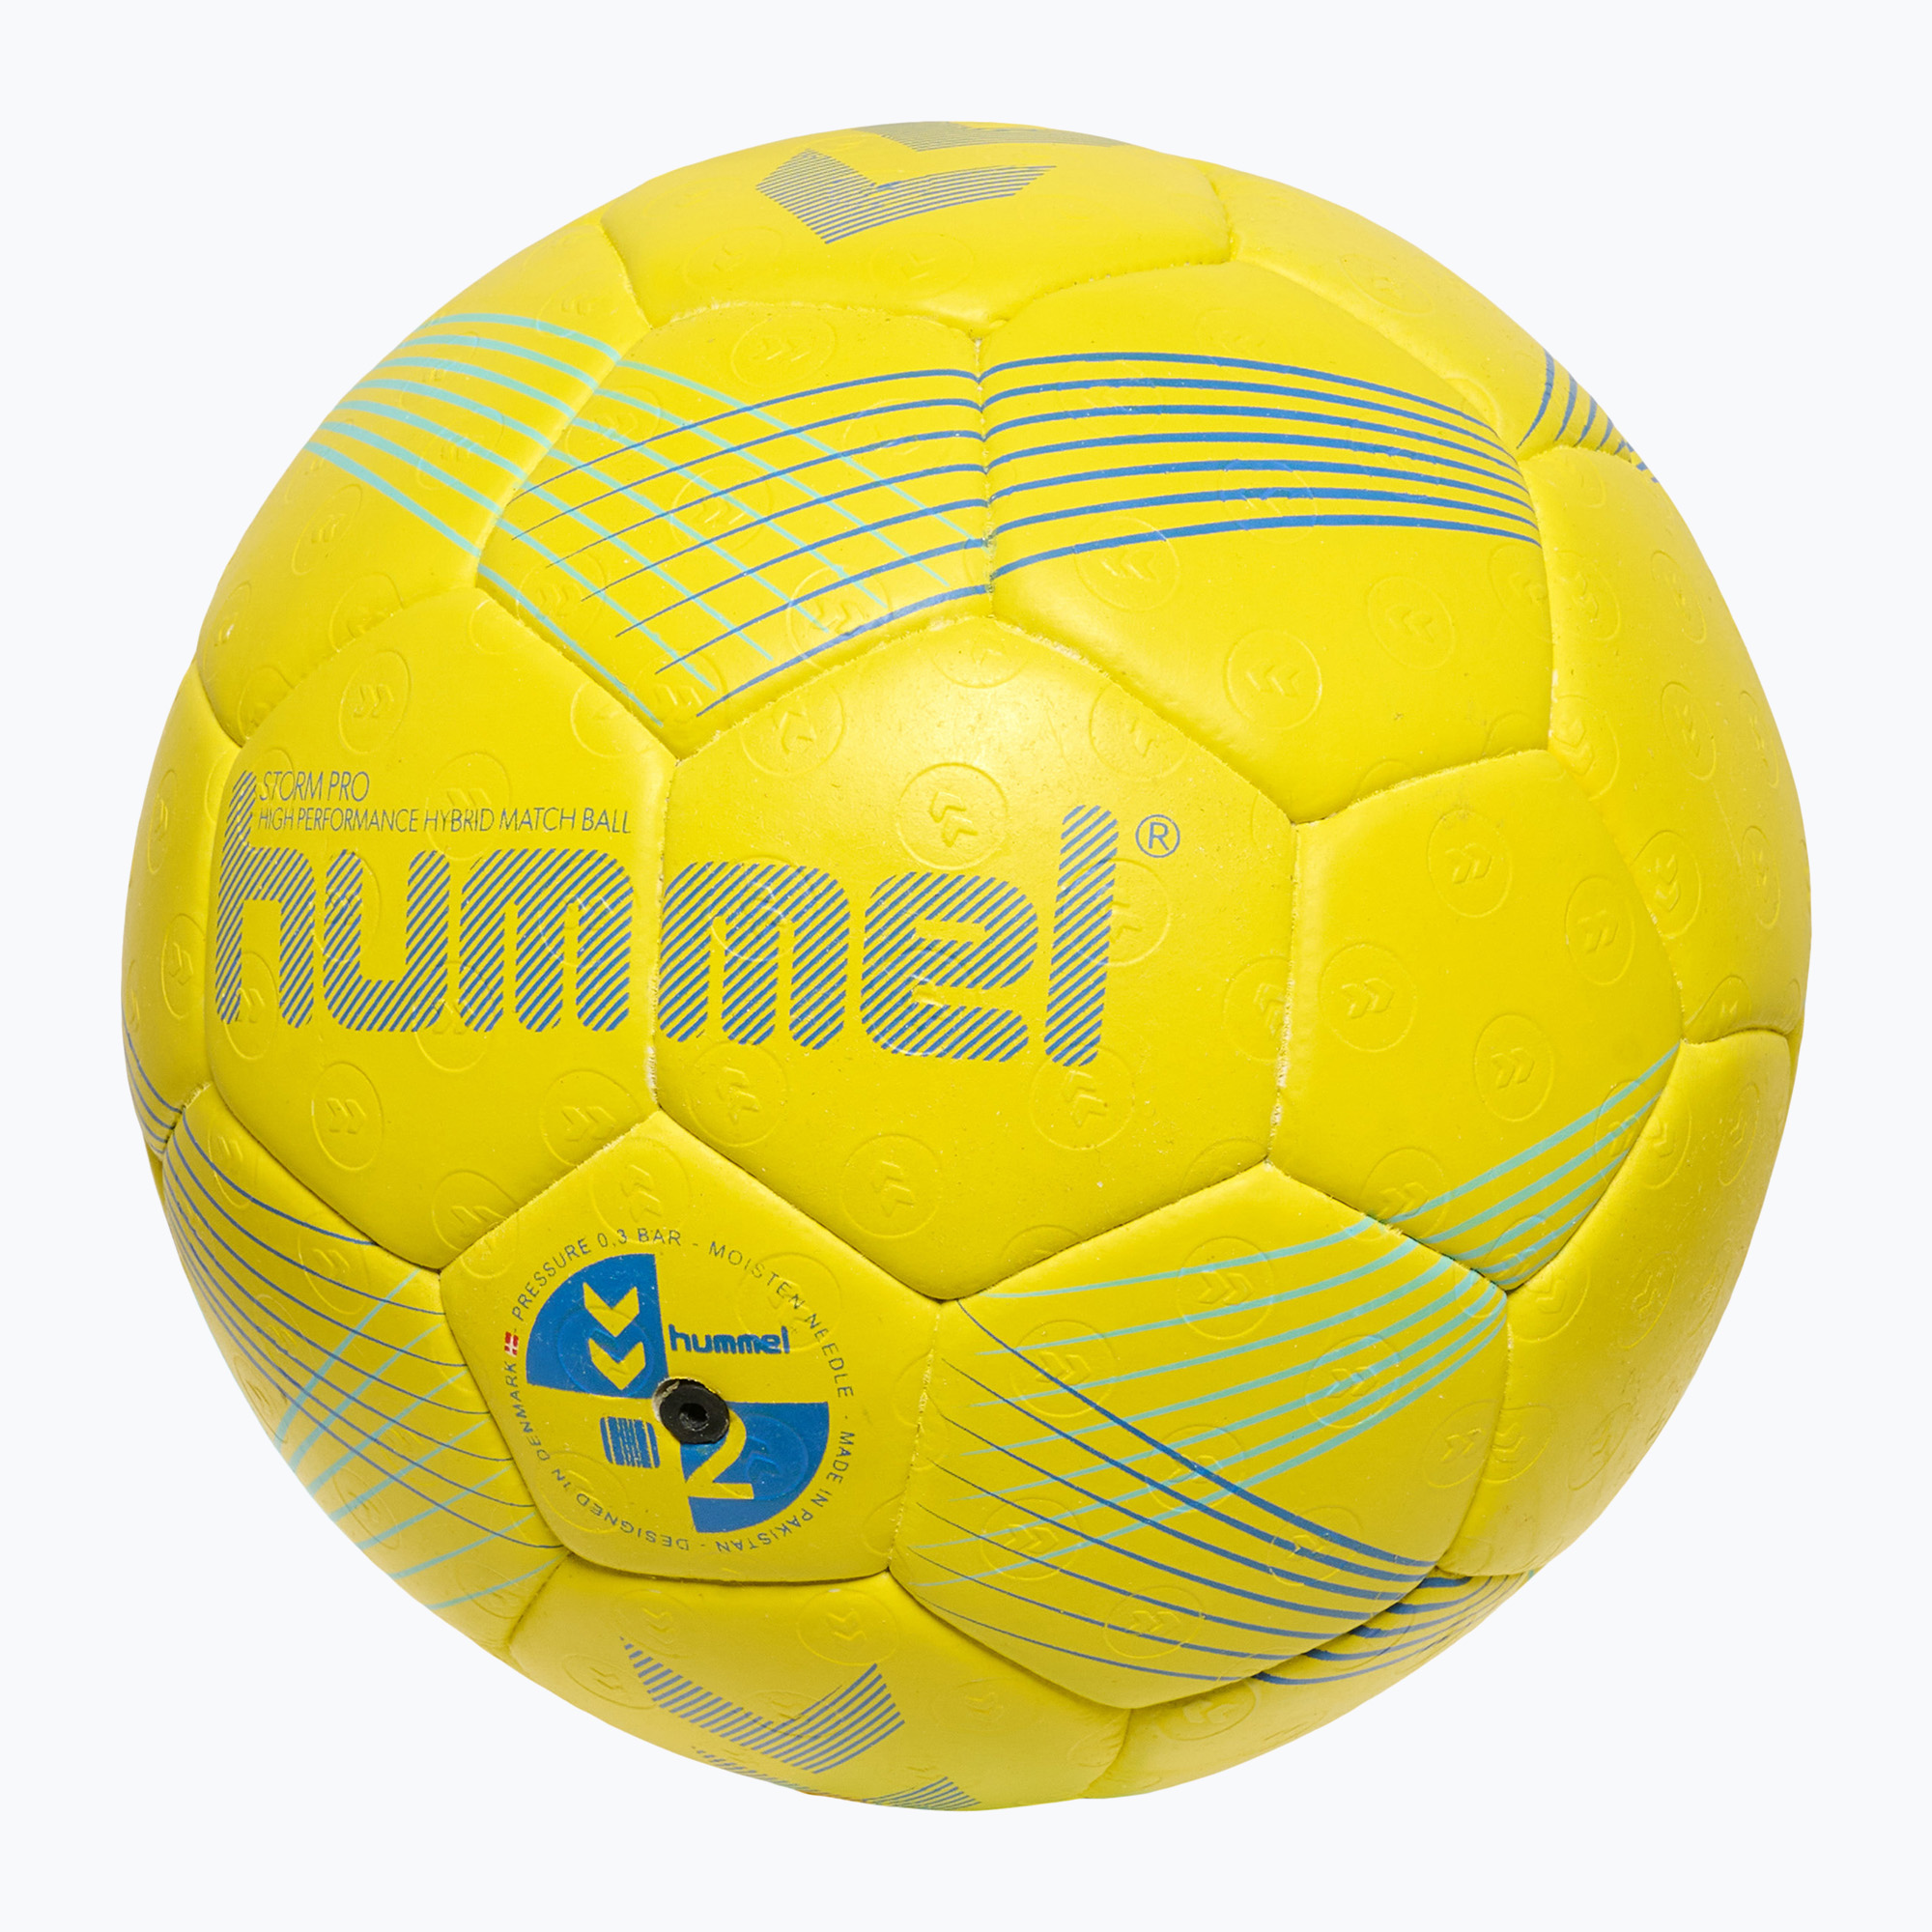 Hummel Strom Pro HB handbal galben/albastru/marin mărimea 2